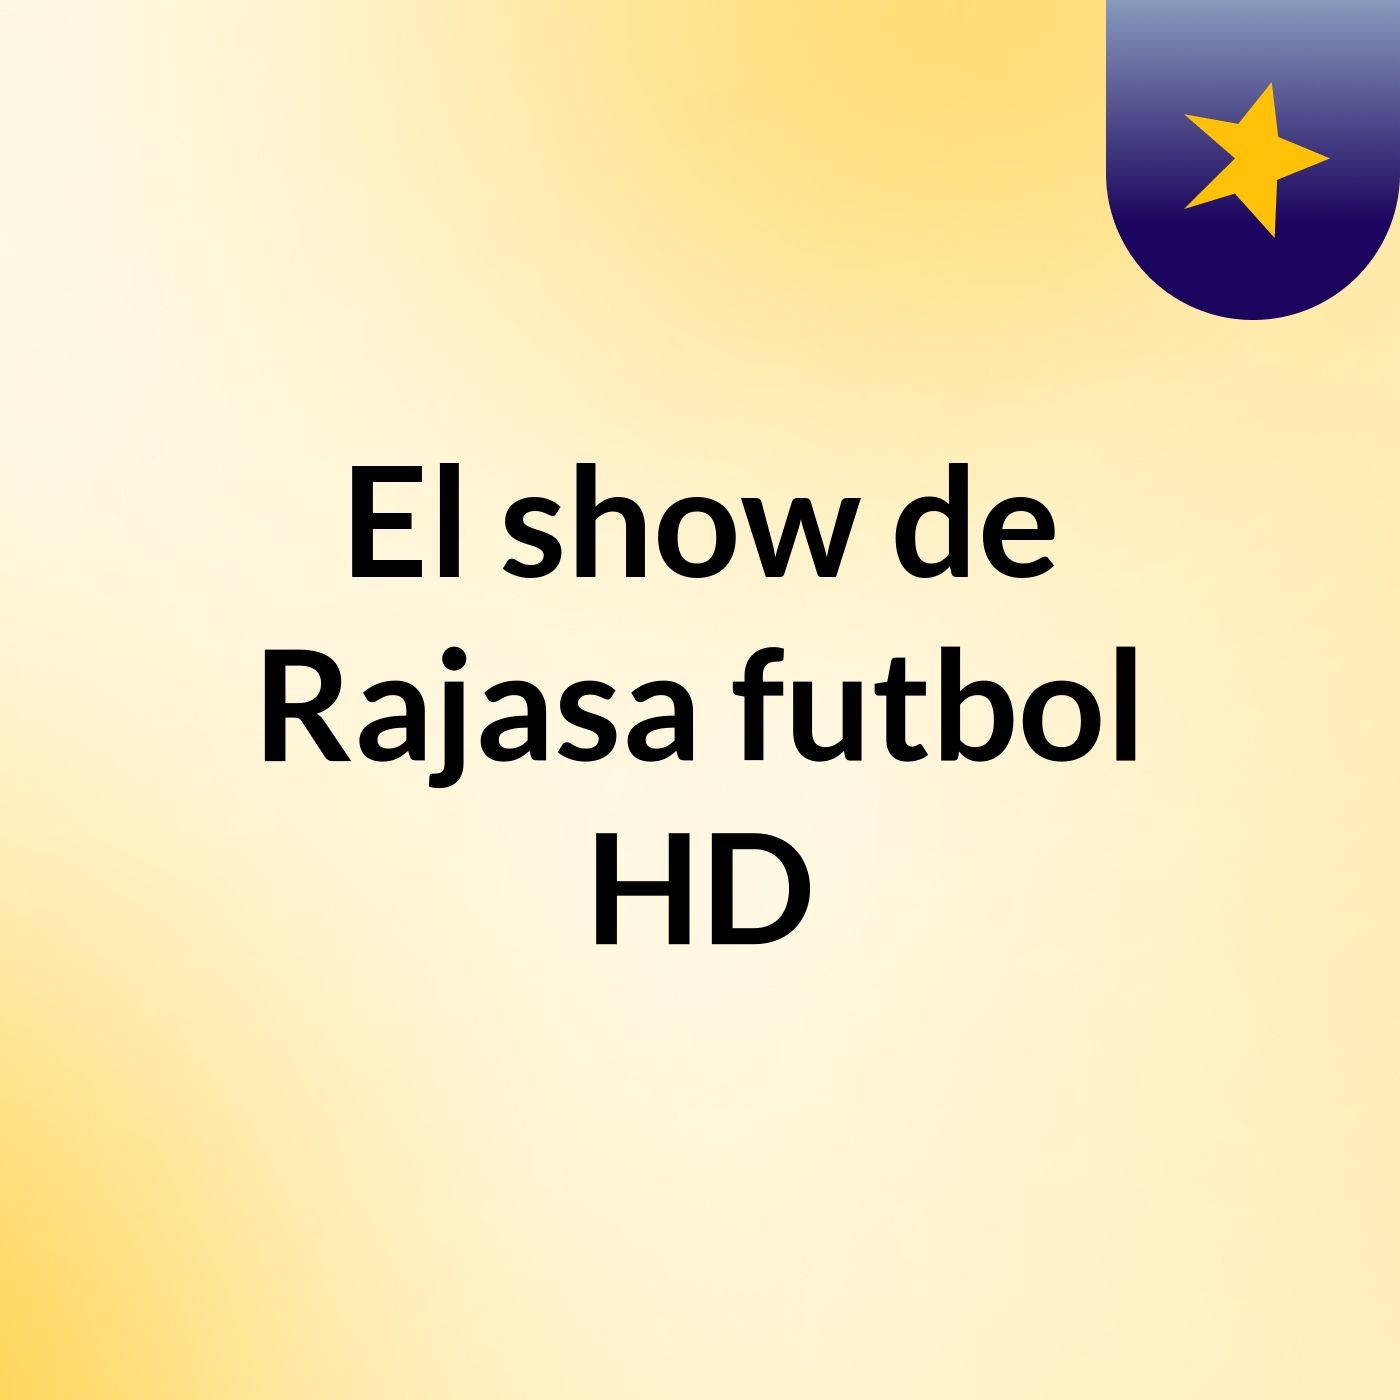 El show de Rajasa futbol HD